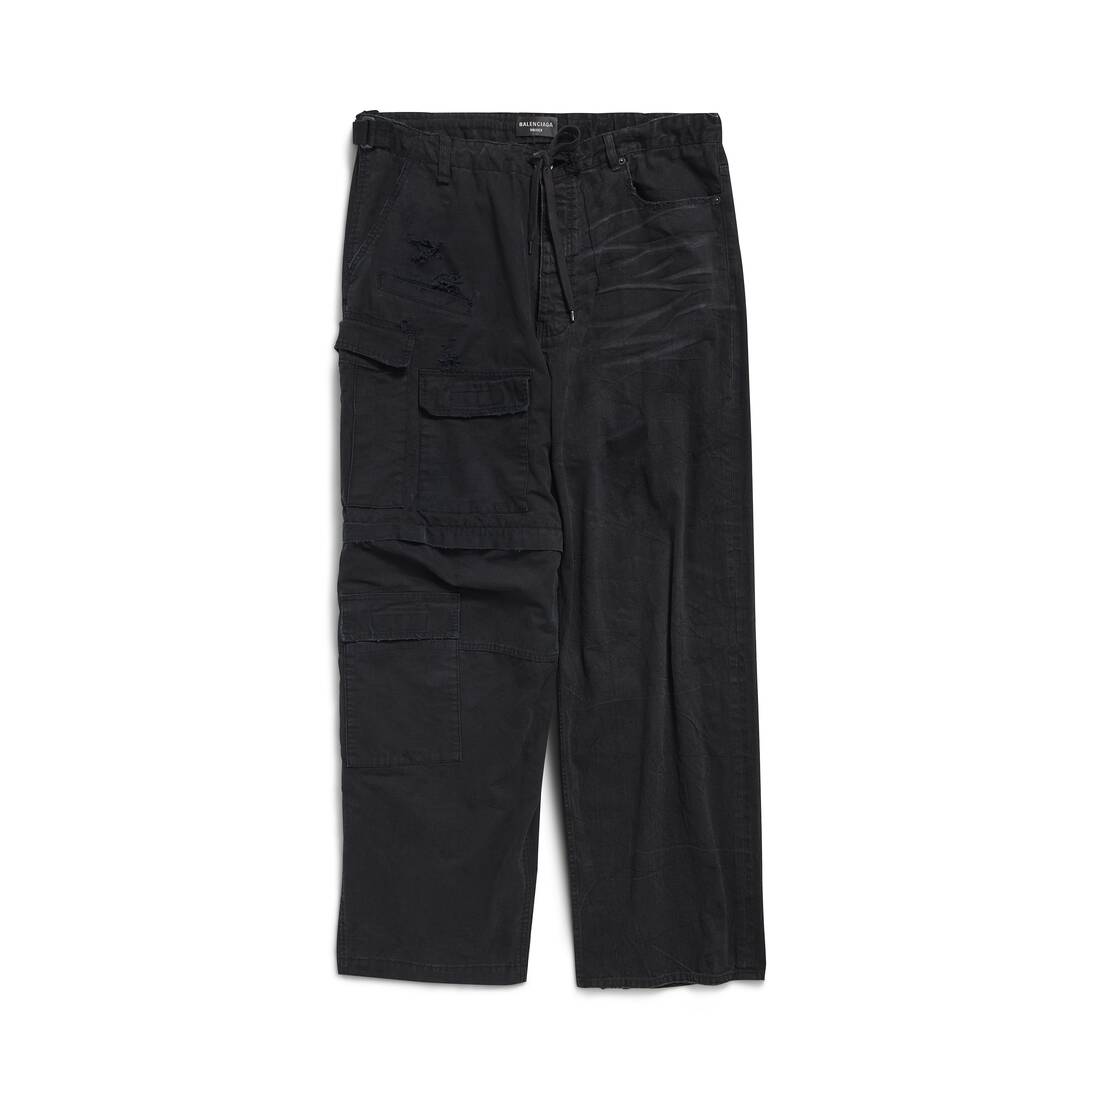 Hybrid Baggy Pants in Black